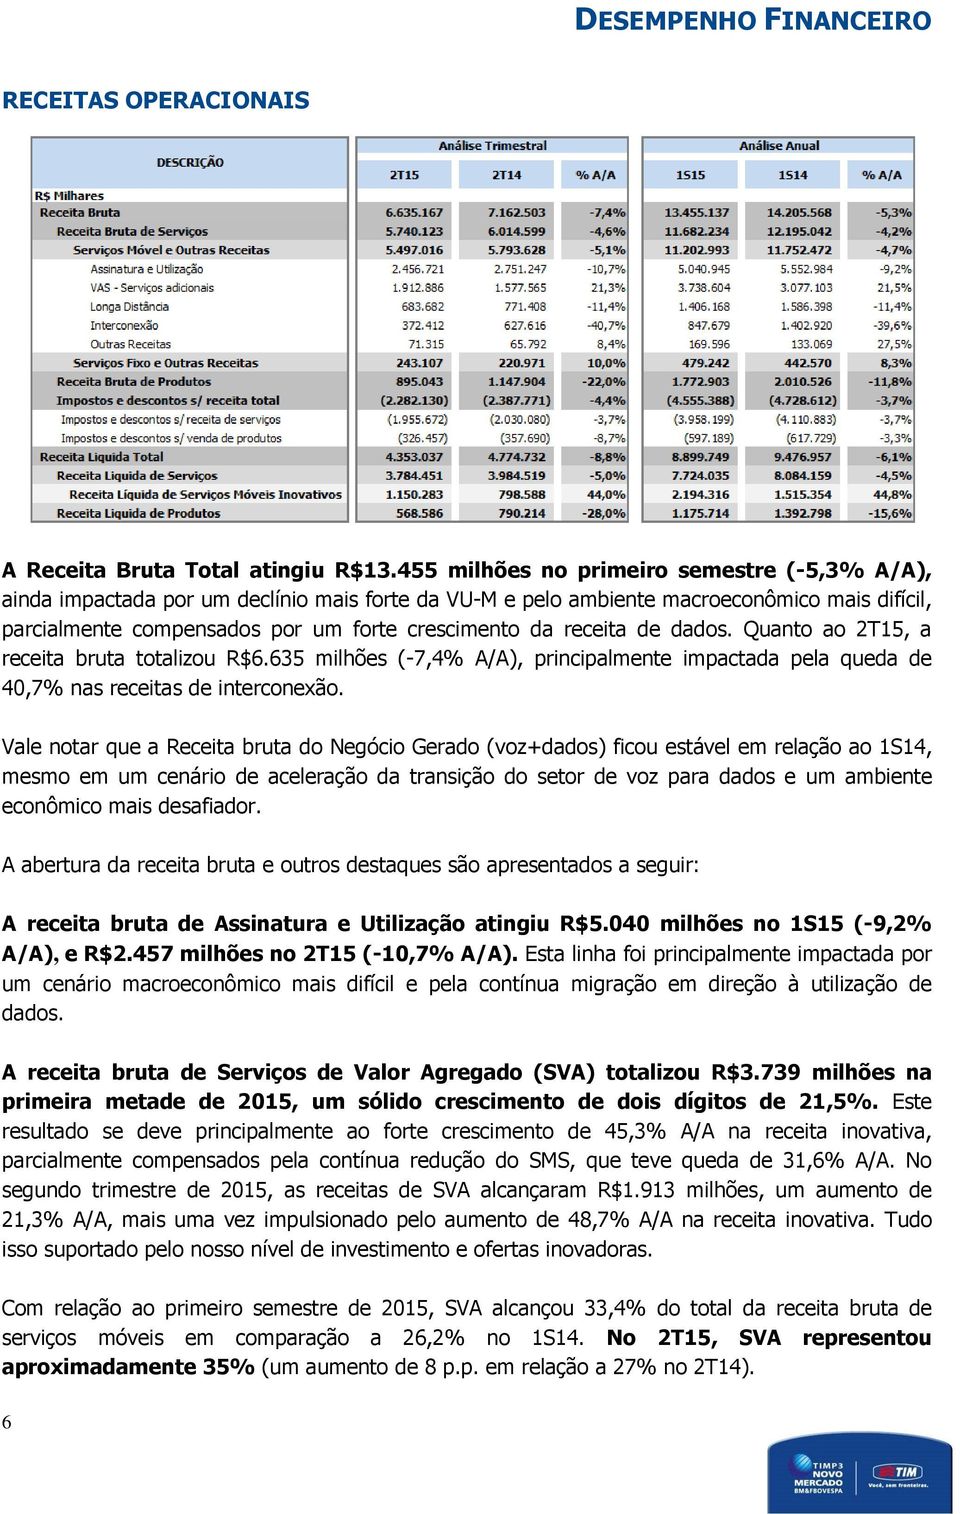 receita de dados. Quanto ao 2T15, a receita bruta totalizou R$6.635 milhões (-7,4% A/A), principalmente impactada pela queda de 40,7% nas receitas de interconexão.